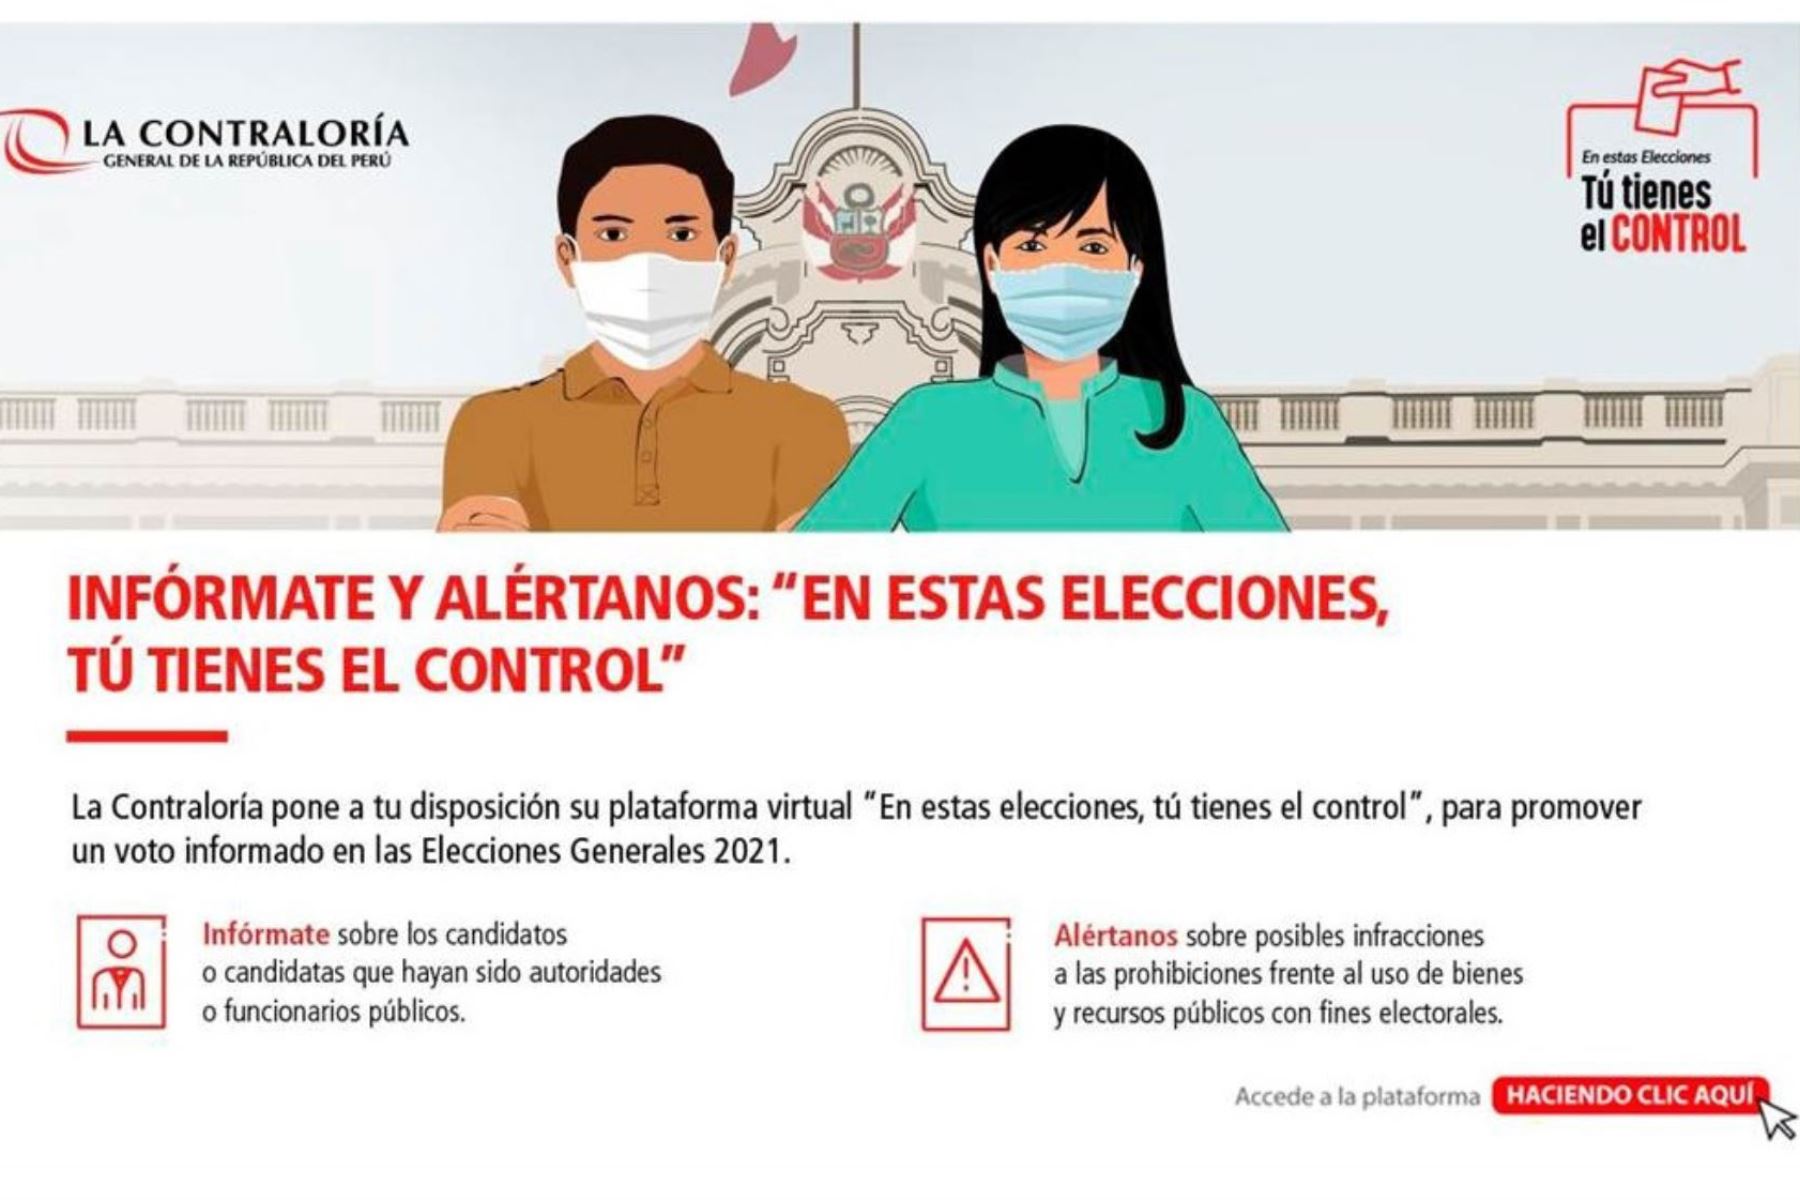 La Contraloría lanzó plataforma para recibir denuncias sobre uso de recursos públicos en elecciones.